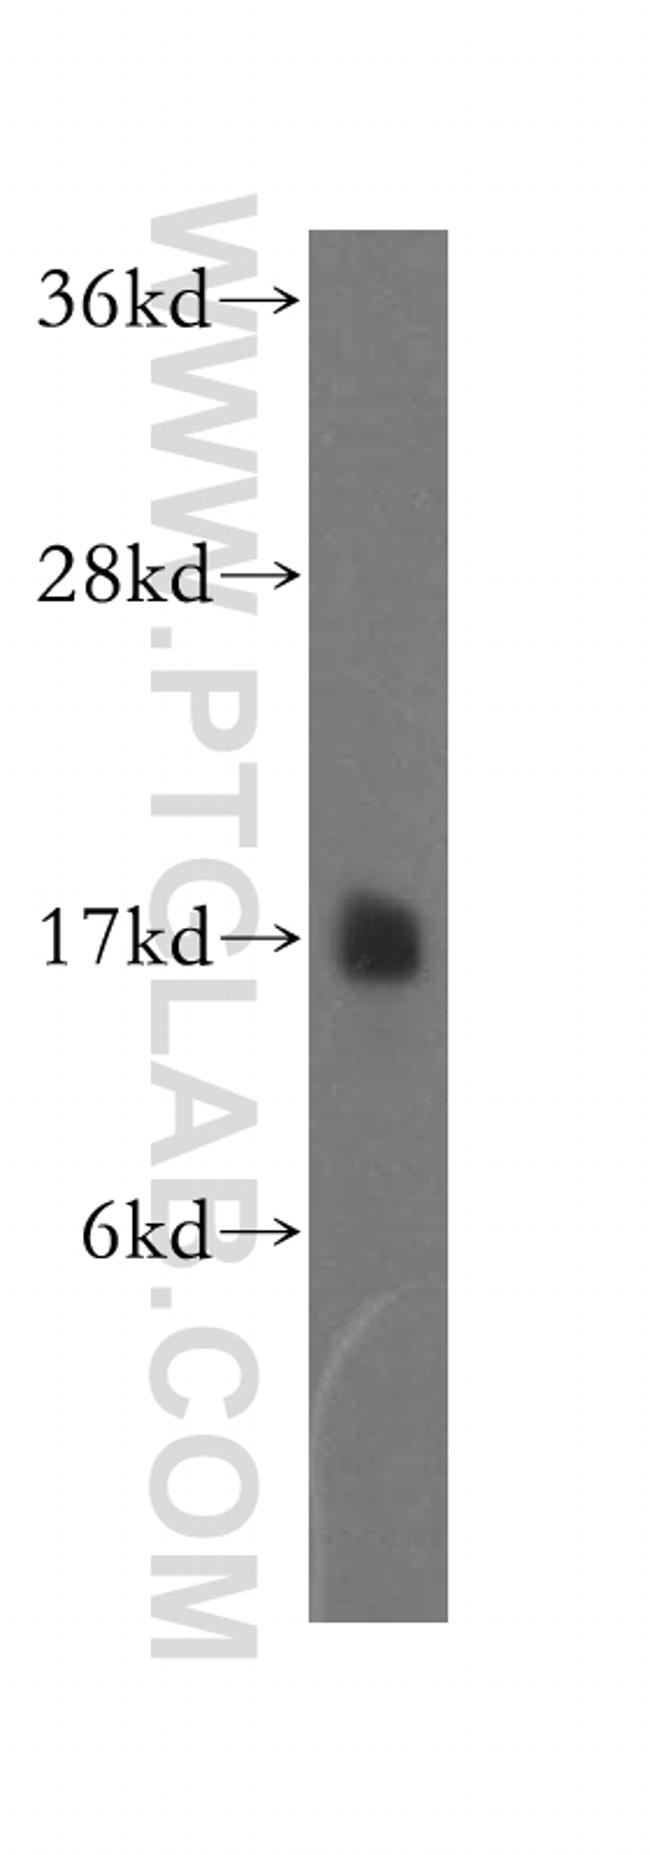 NDUFB6 Antibody in Western Blot (WB)